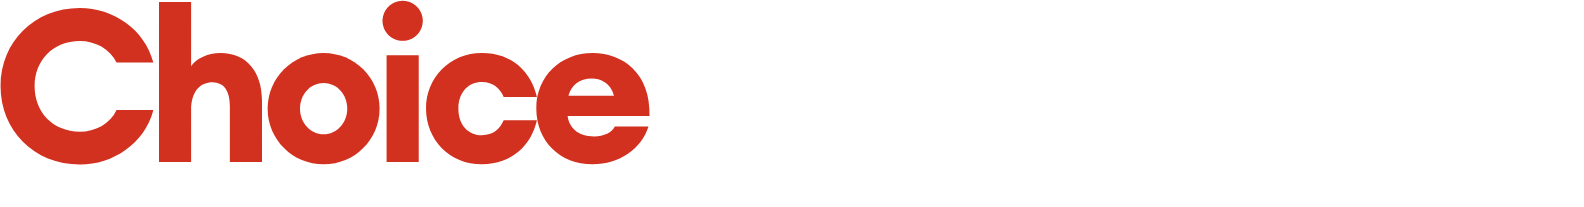 Choice Properties REIT logo grand pour les fonds sombres (PNG transparent)